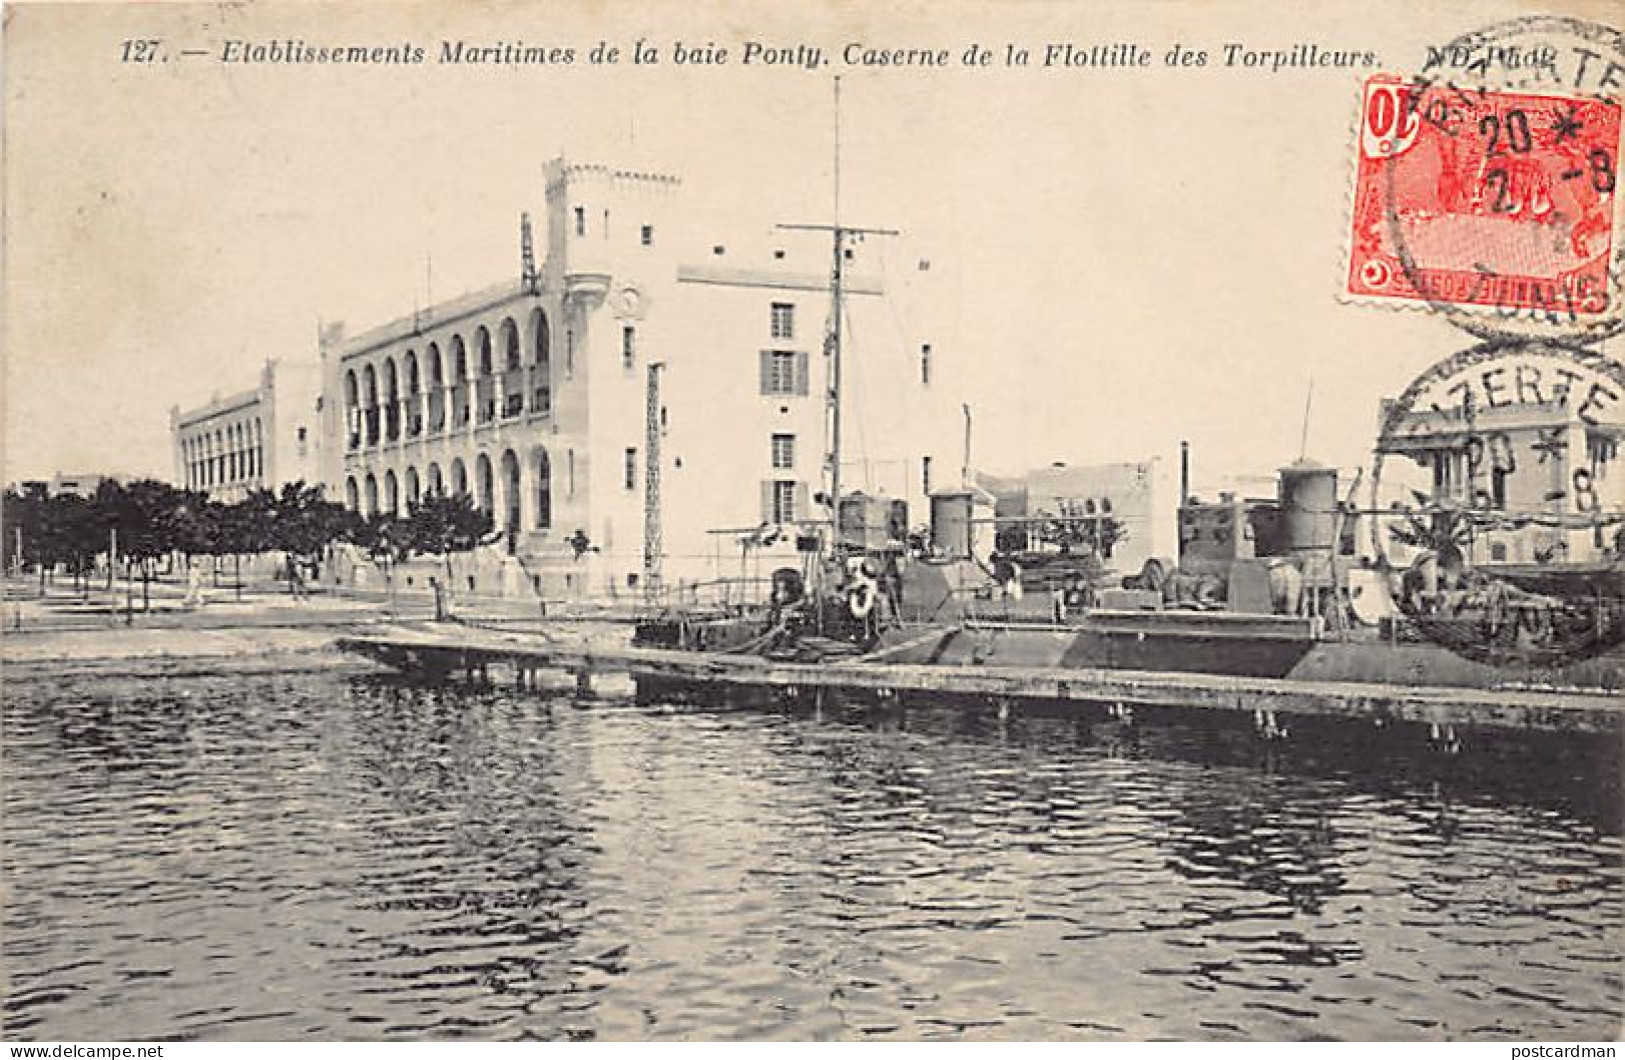 Tunisie - BAIE PONTY Bizerte - Etablissements Maritimes, Caserne De La Flotille Des Torpilleurs - Ed. ND Phot. 127 - Tunisia